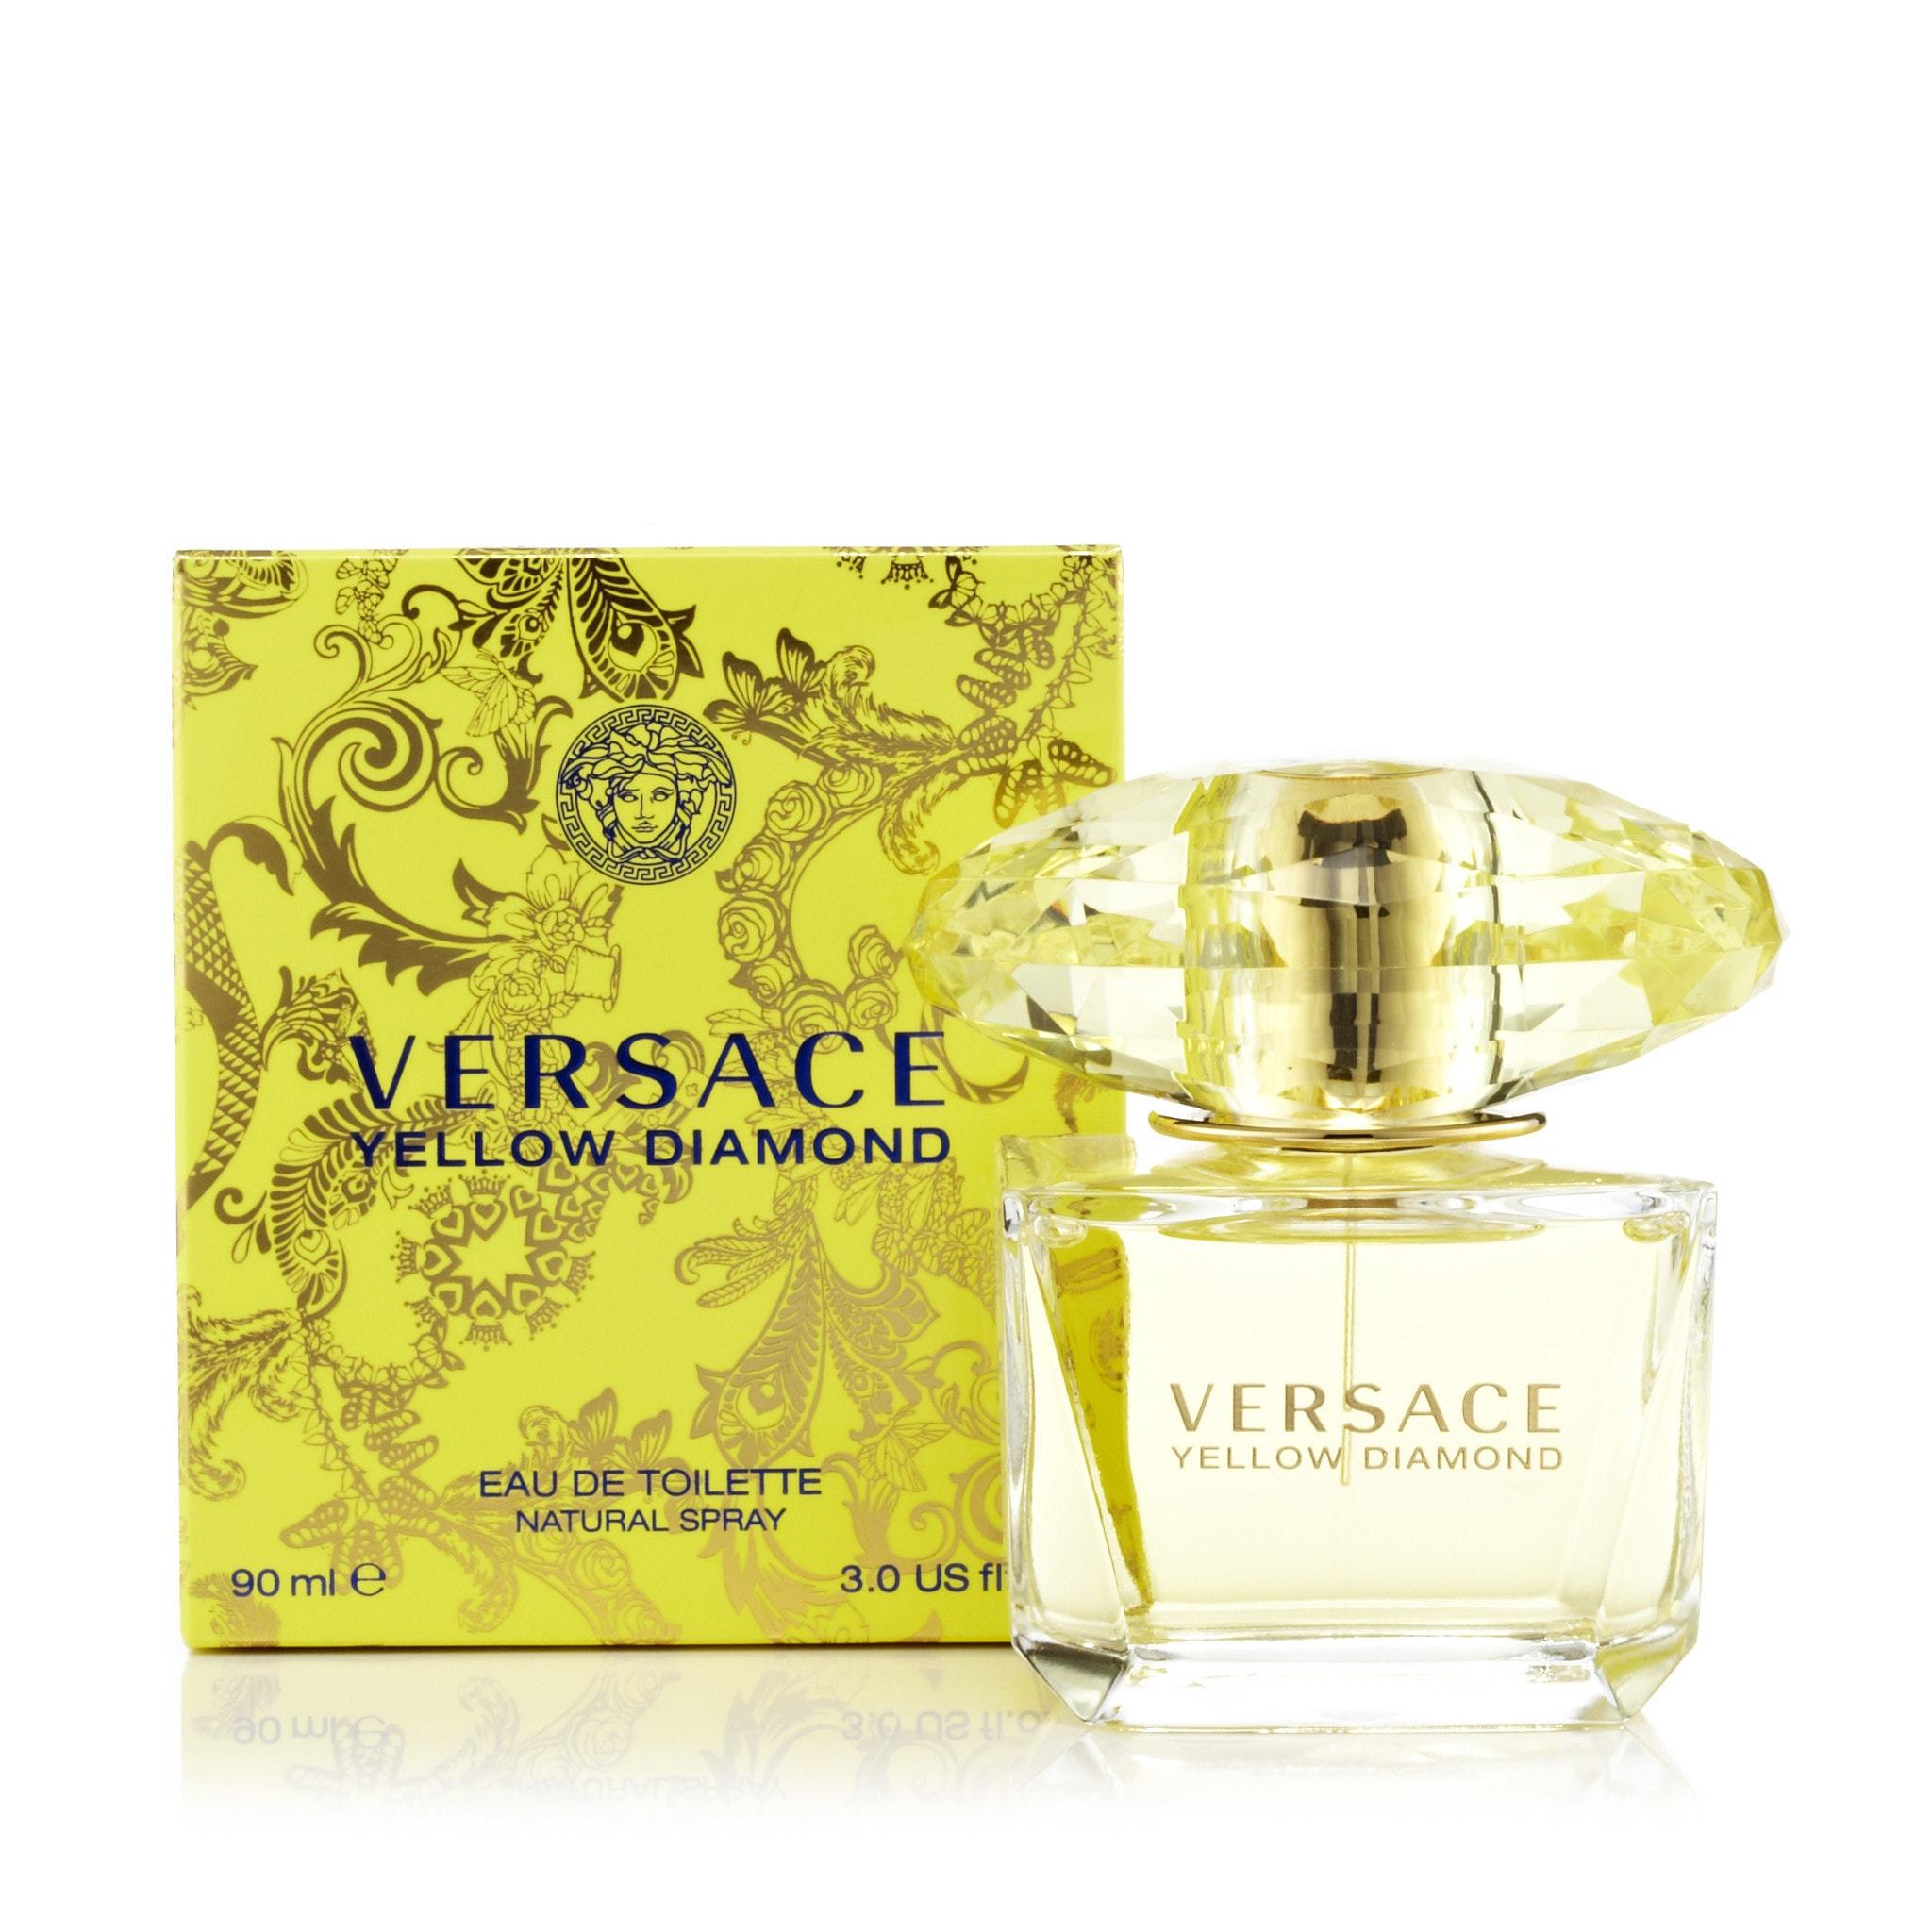 Versace Yellow Diamond de Women Eau – Outlet Toilette Fragrance for